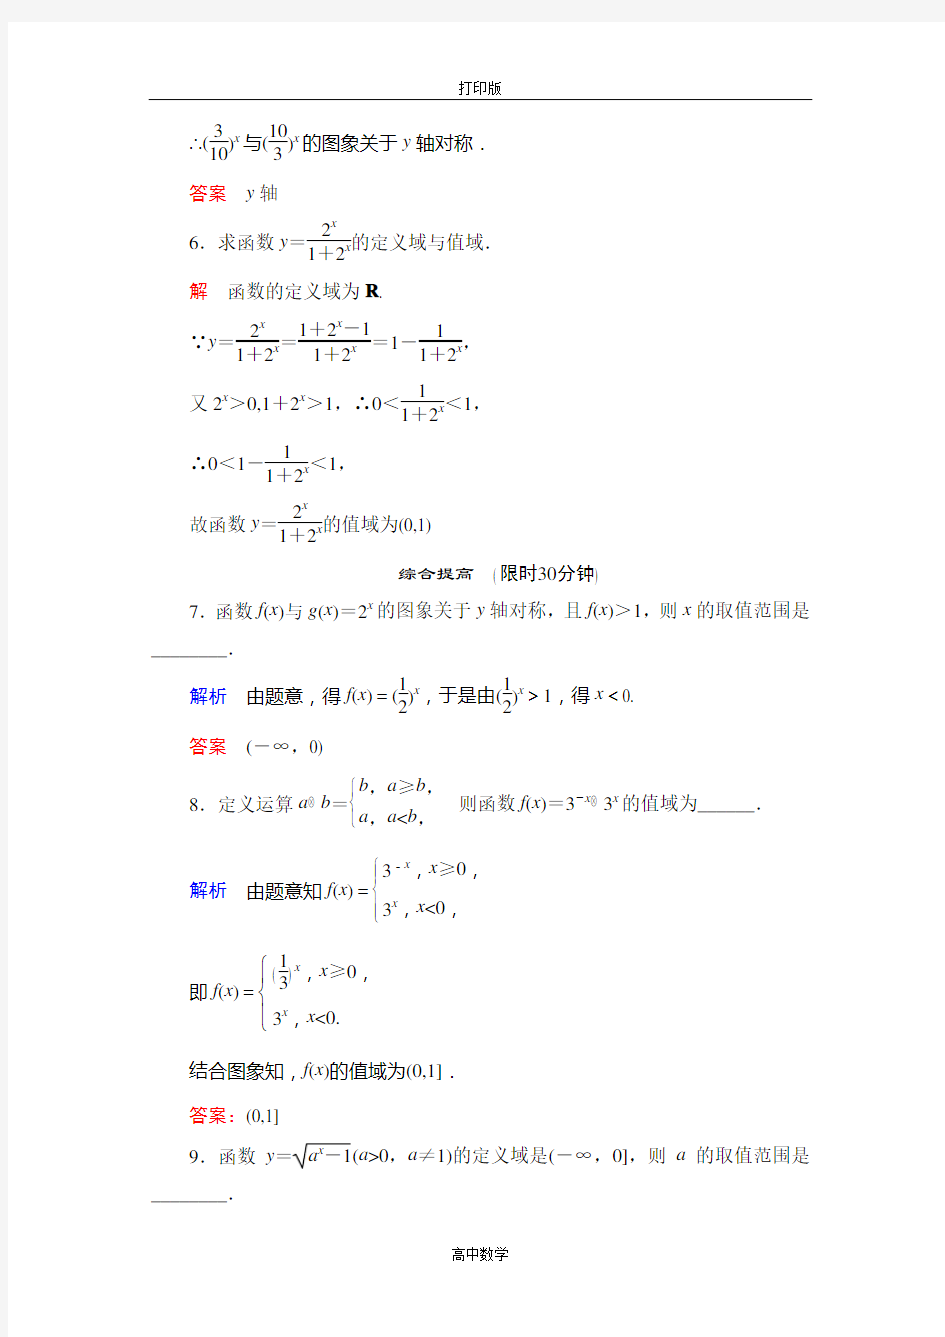 苏教版数学高一- 数学苏教必修一练习.1指数函数及其图象